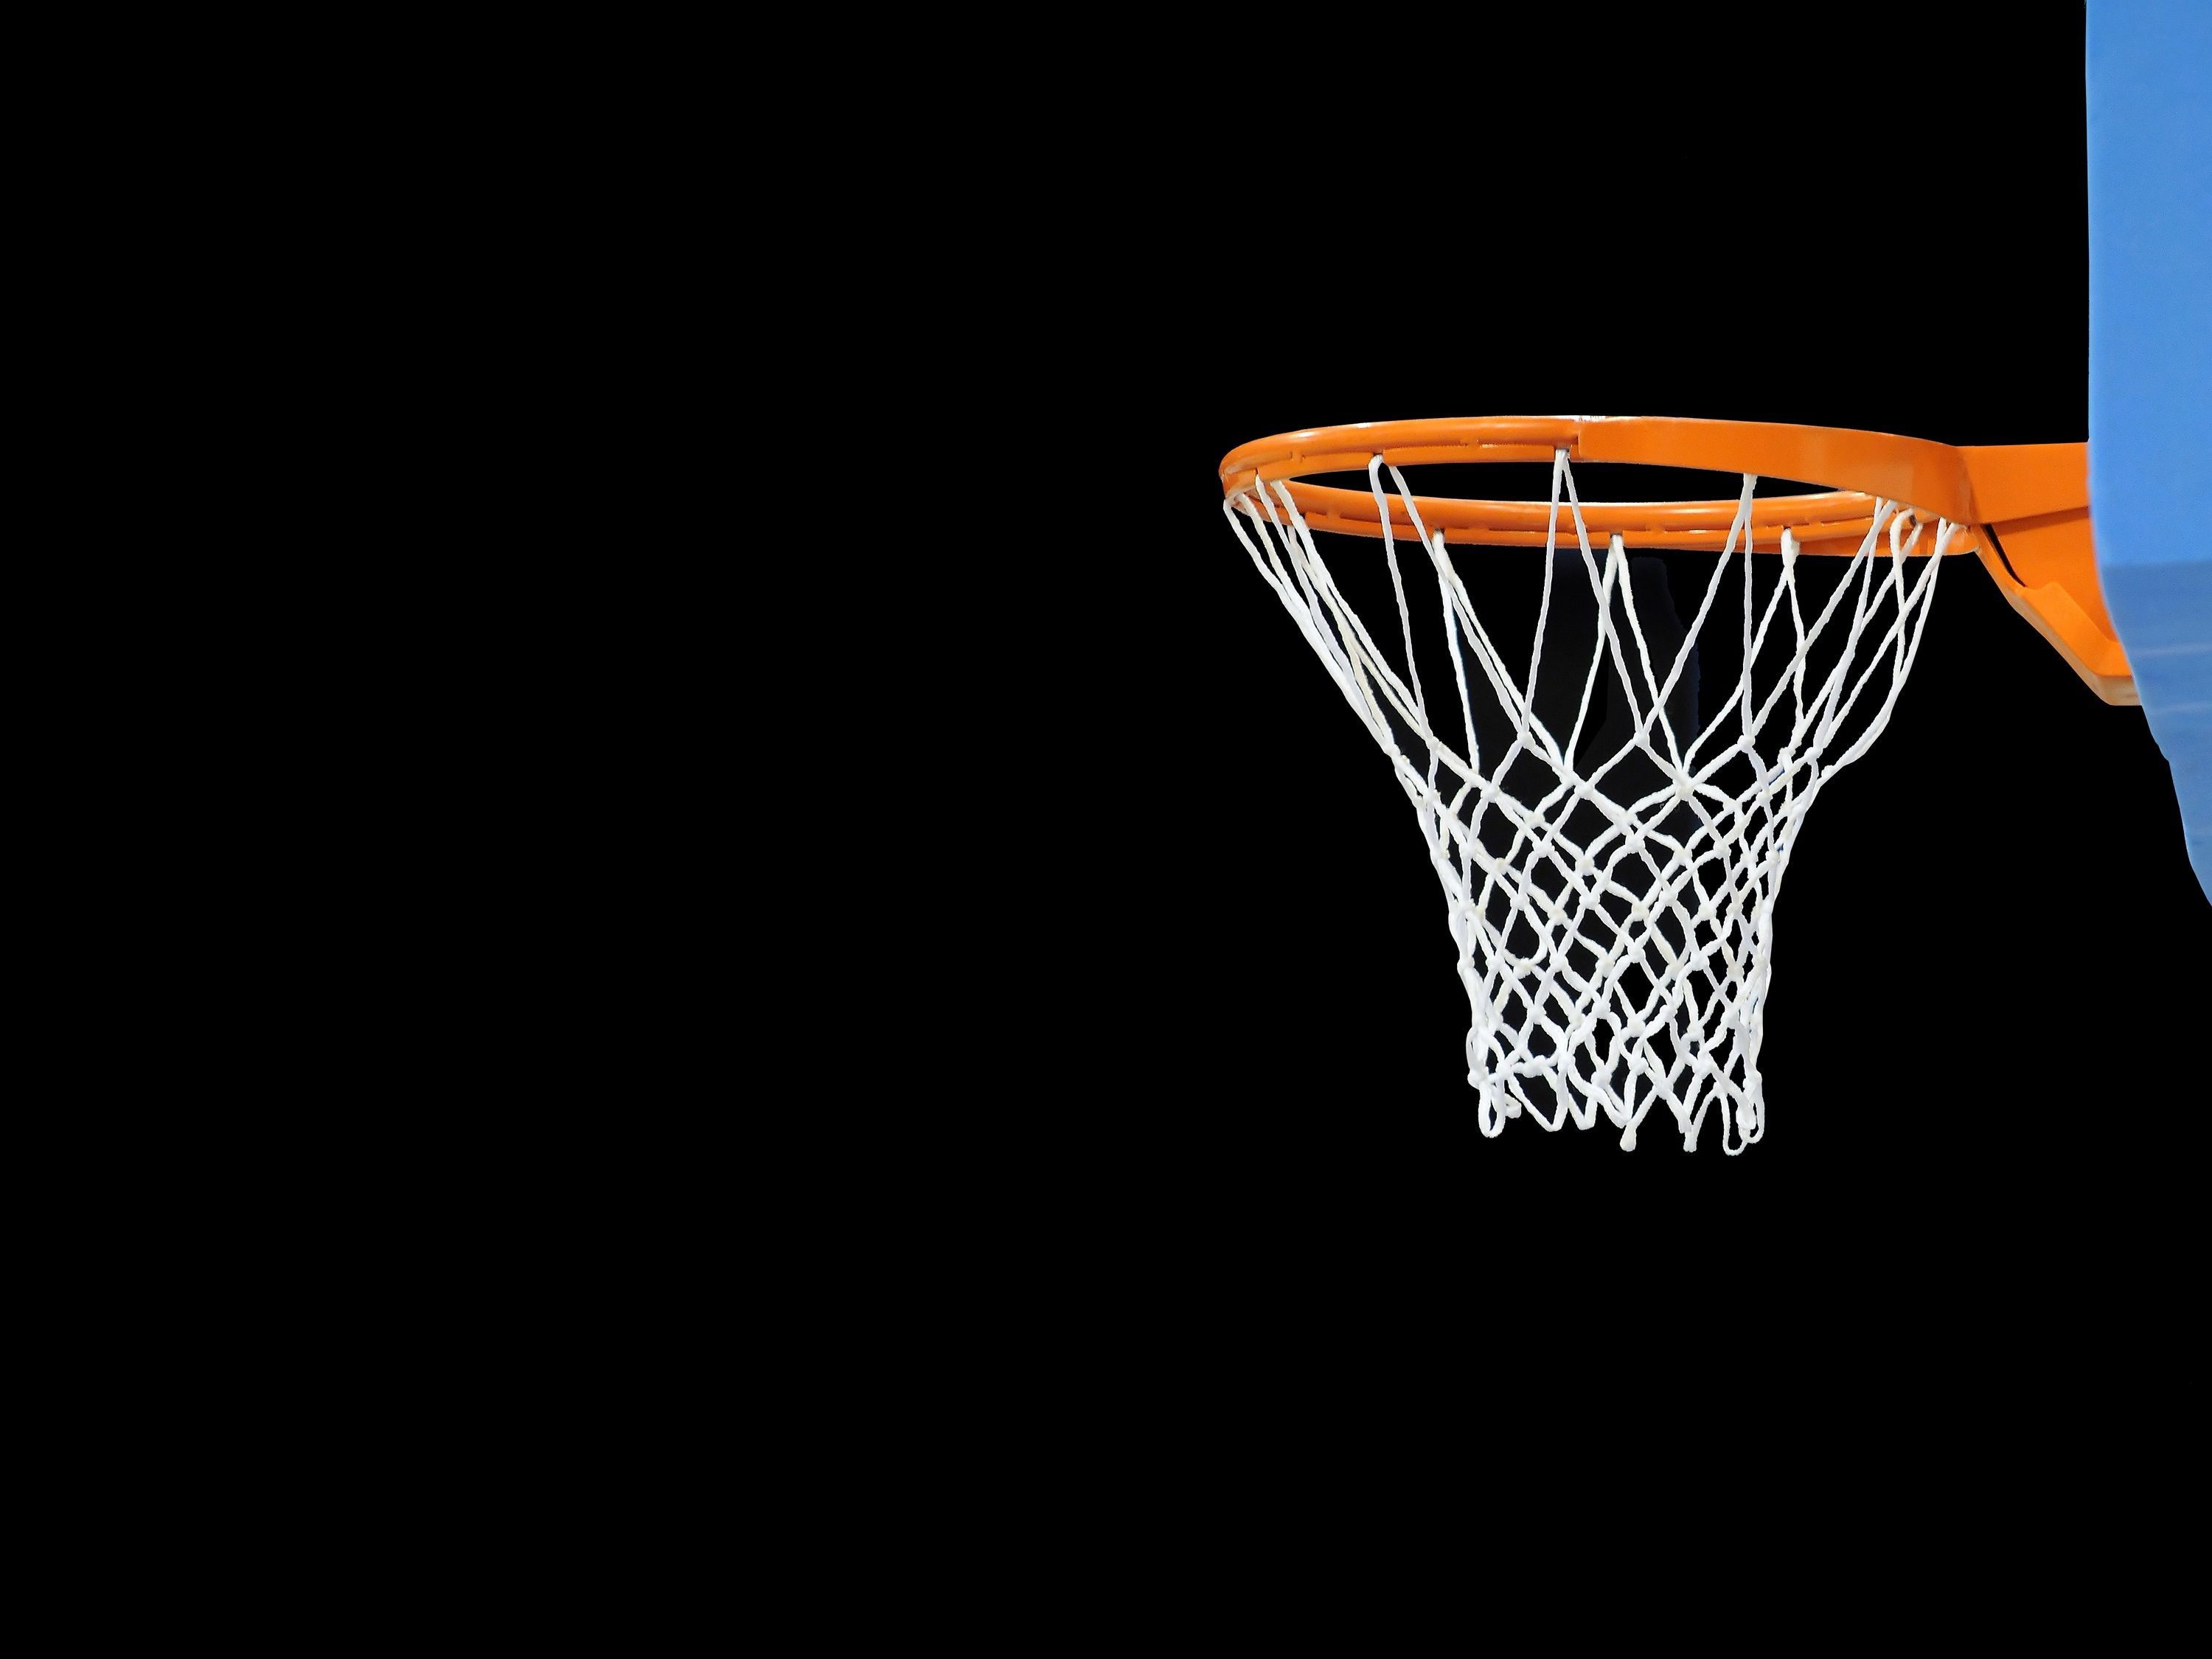 michael myers de pantalla en vivo,aro de baloncesto,baloncesto,red,equipo deportivo